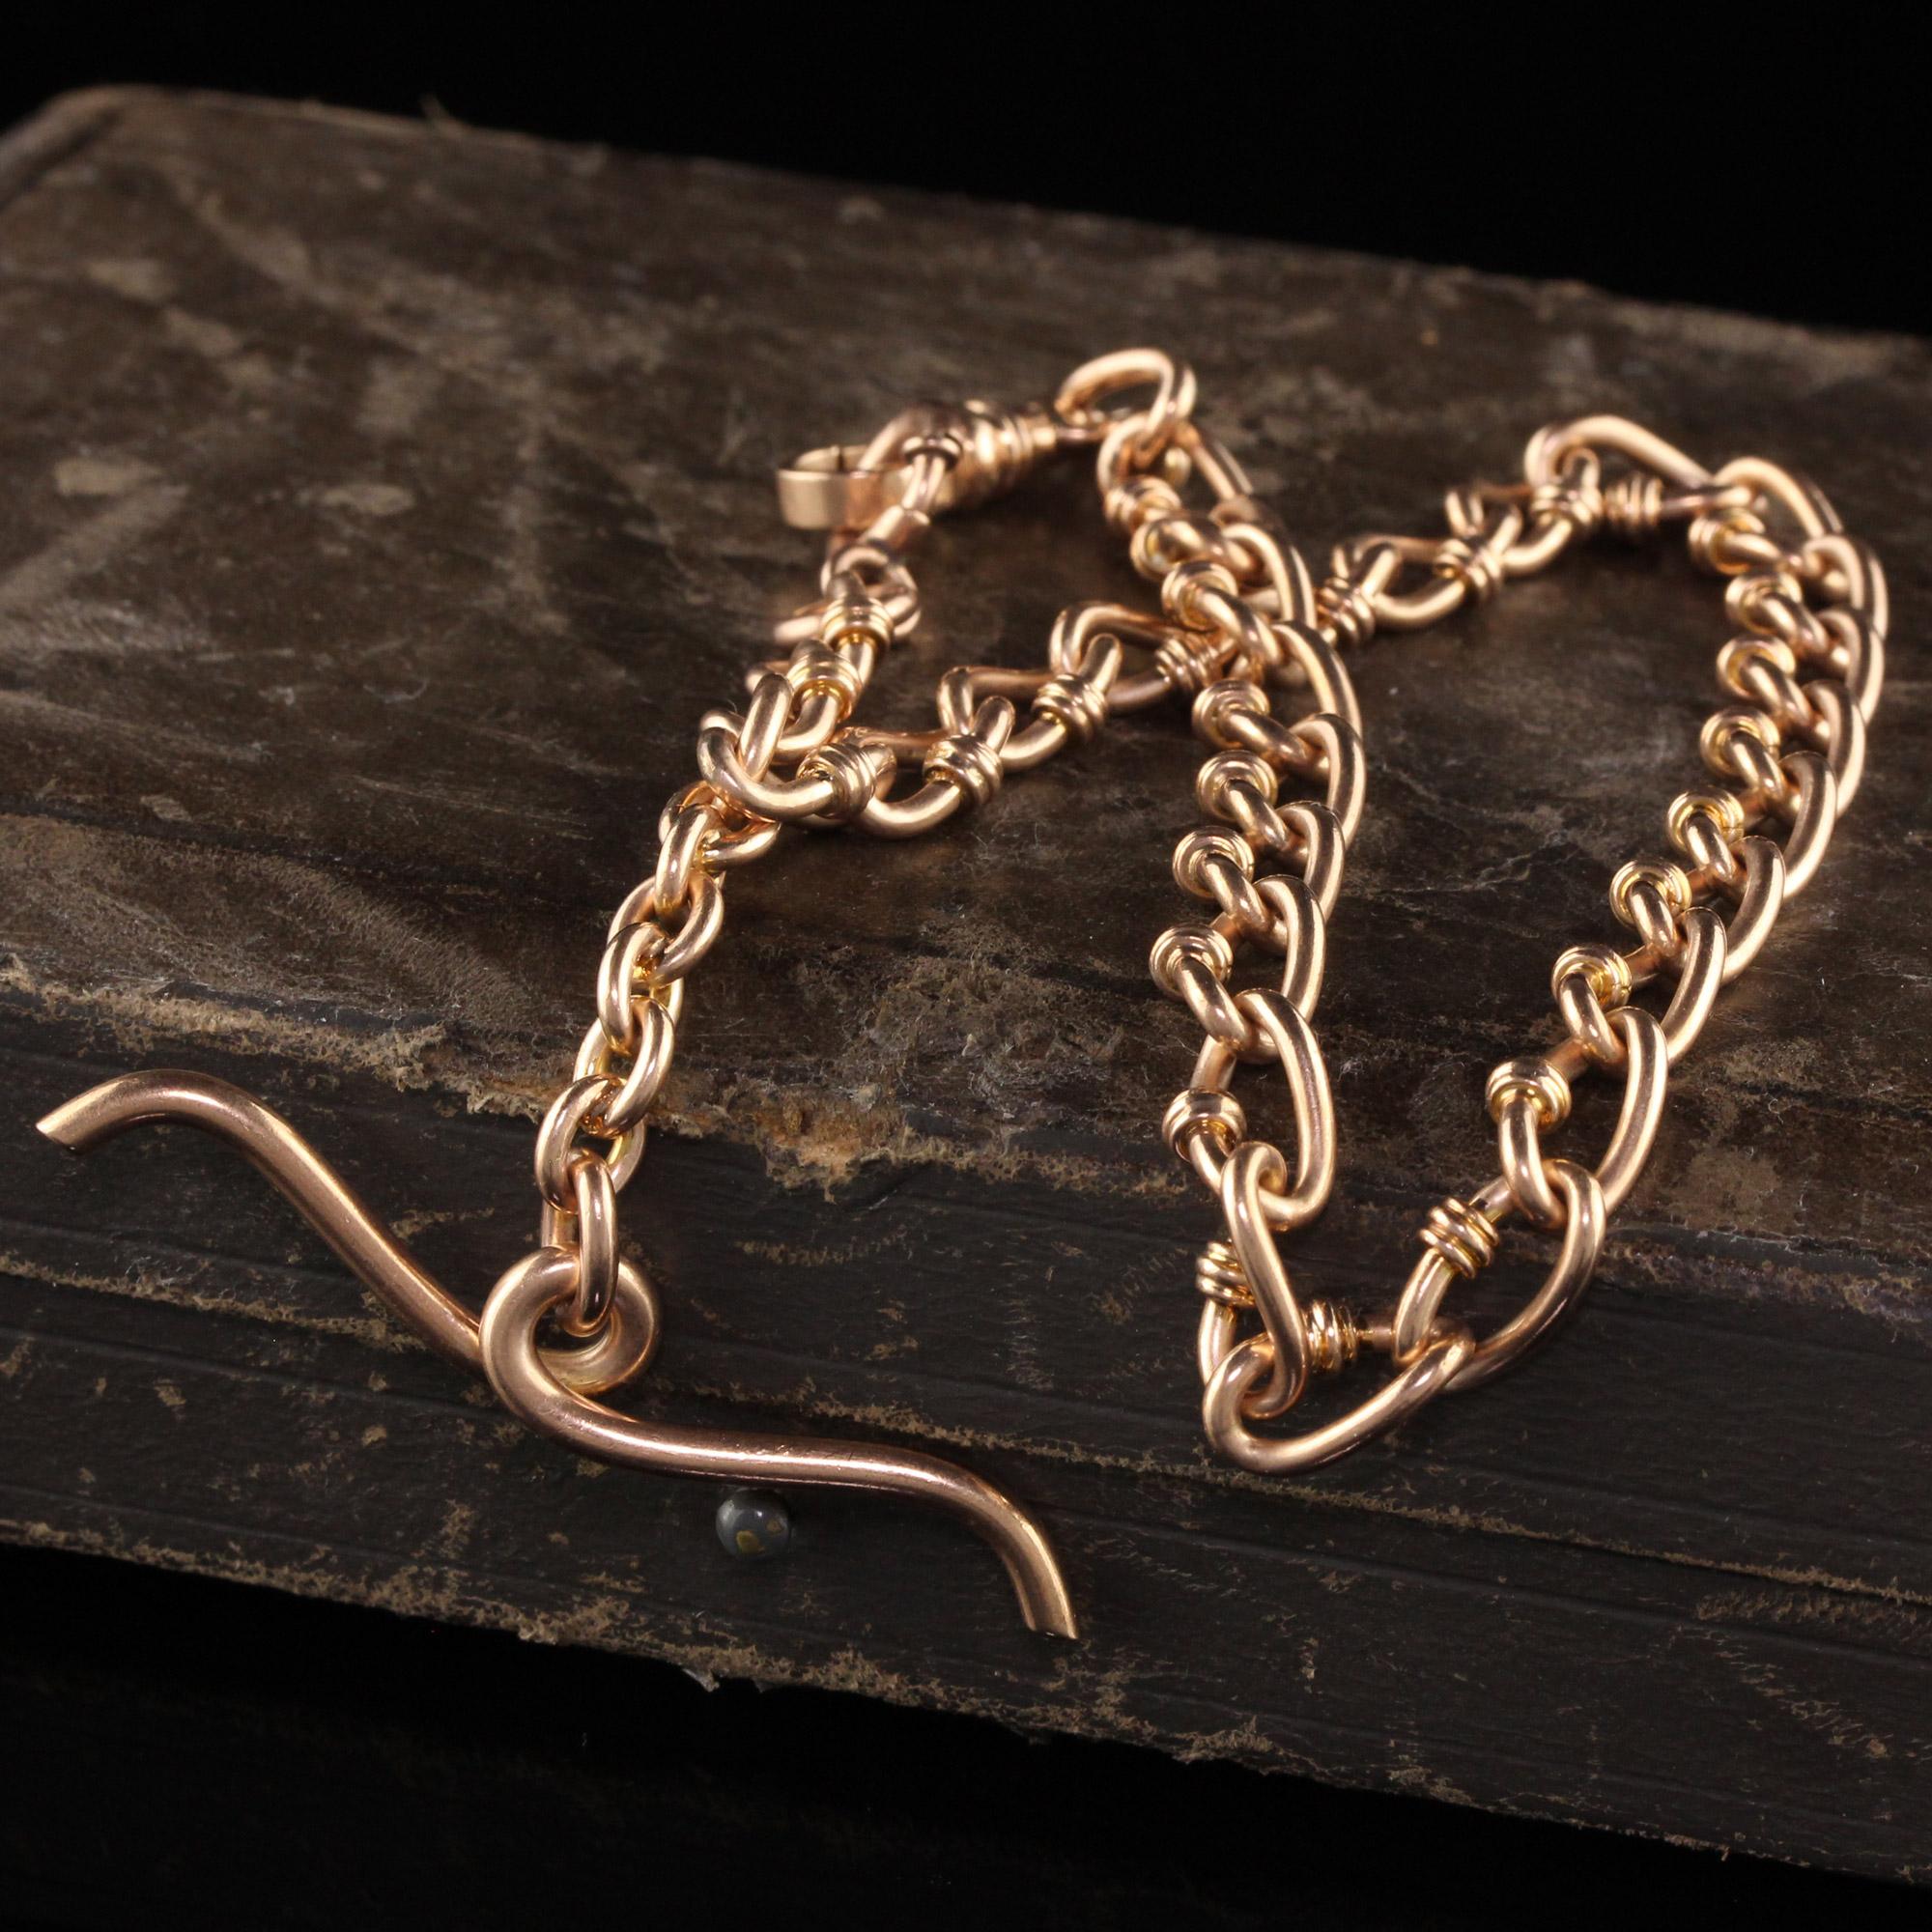 Schöne antike Art Deco 14K Rose Gold komplizierte Link Watch Fob Halskette - 12,5 Zoll. Diese wunderschöne Halskette mit Uhrenanhänger ist aus 14 Karat Roségold gefertigt. Die Kette ist mit einer schönen Gliederkette versehen, an der auch eine